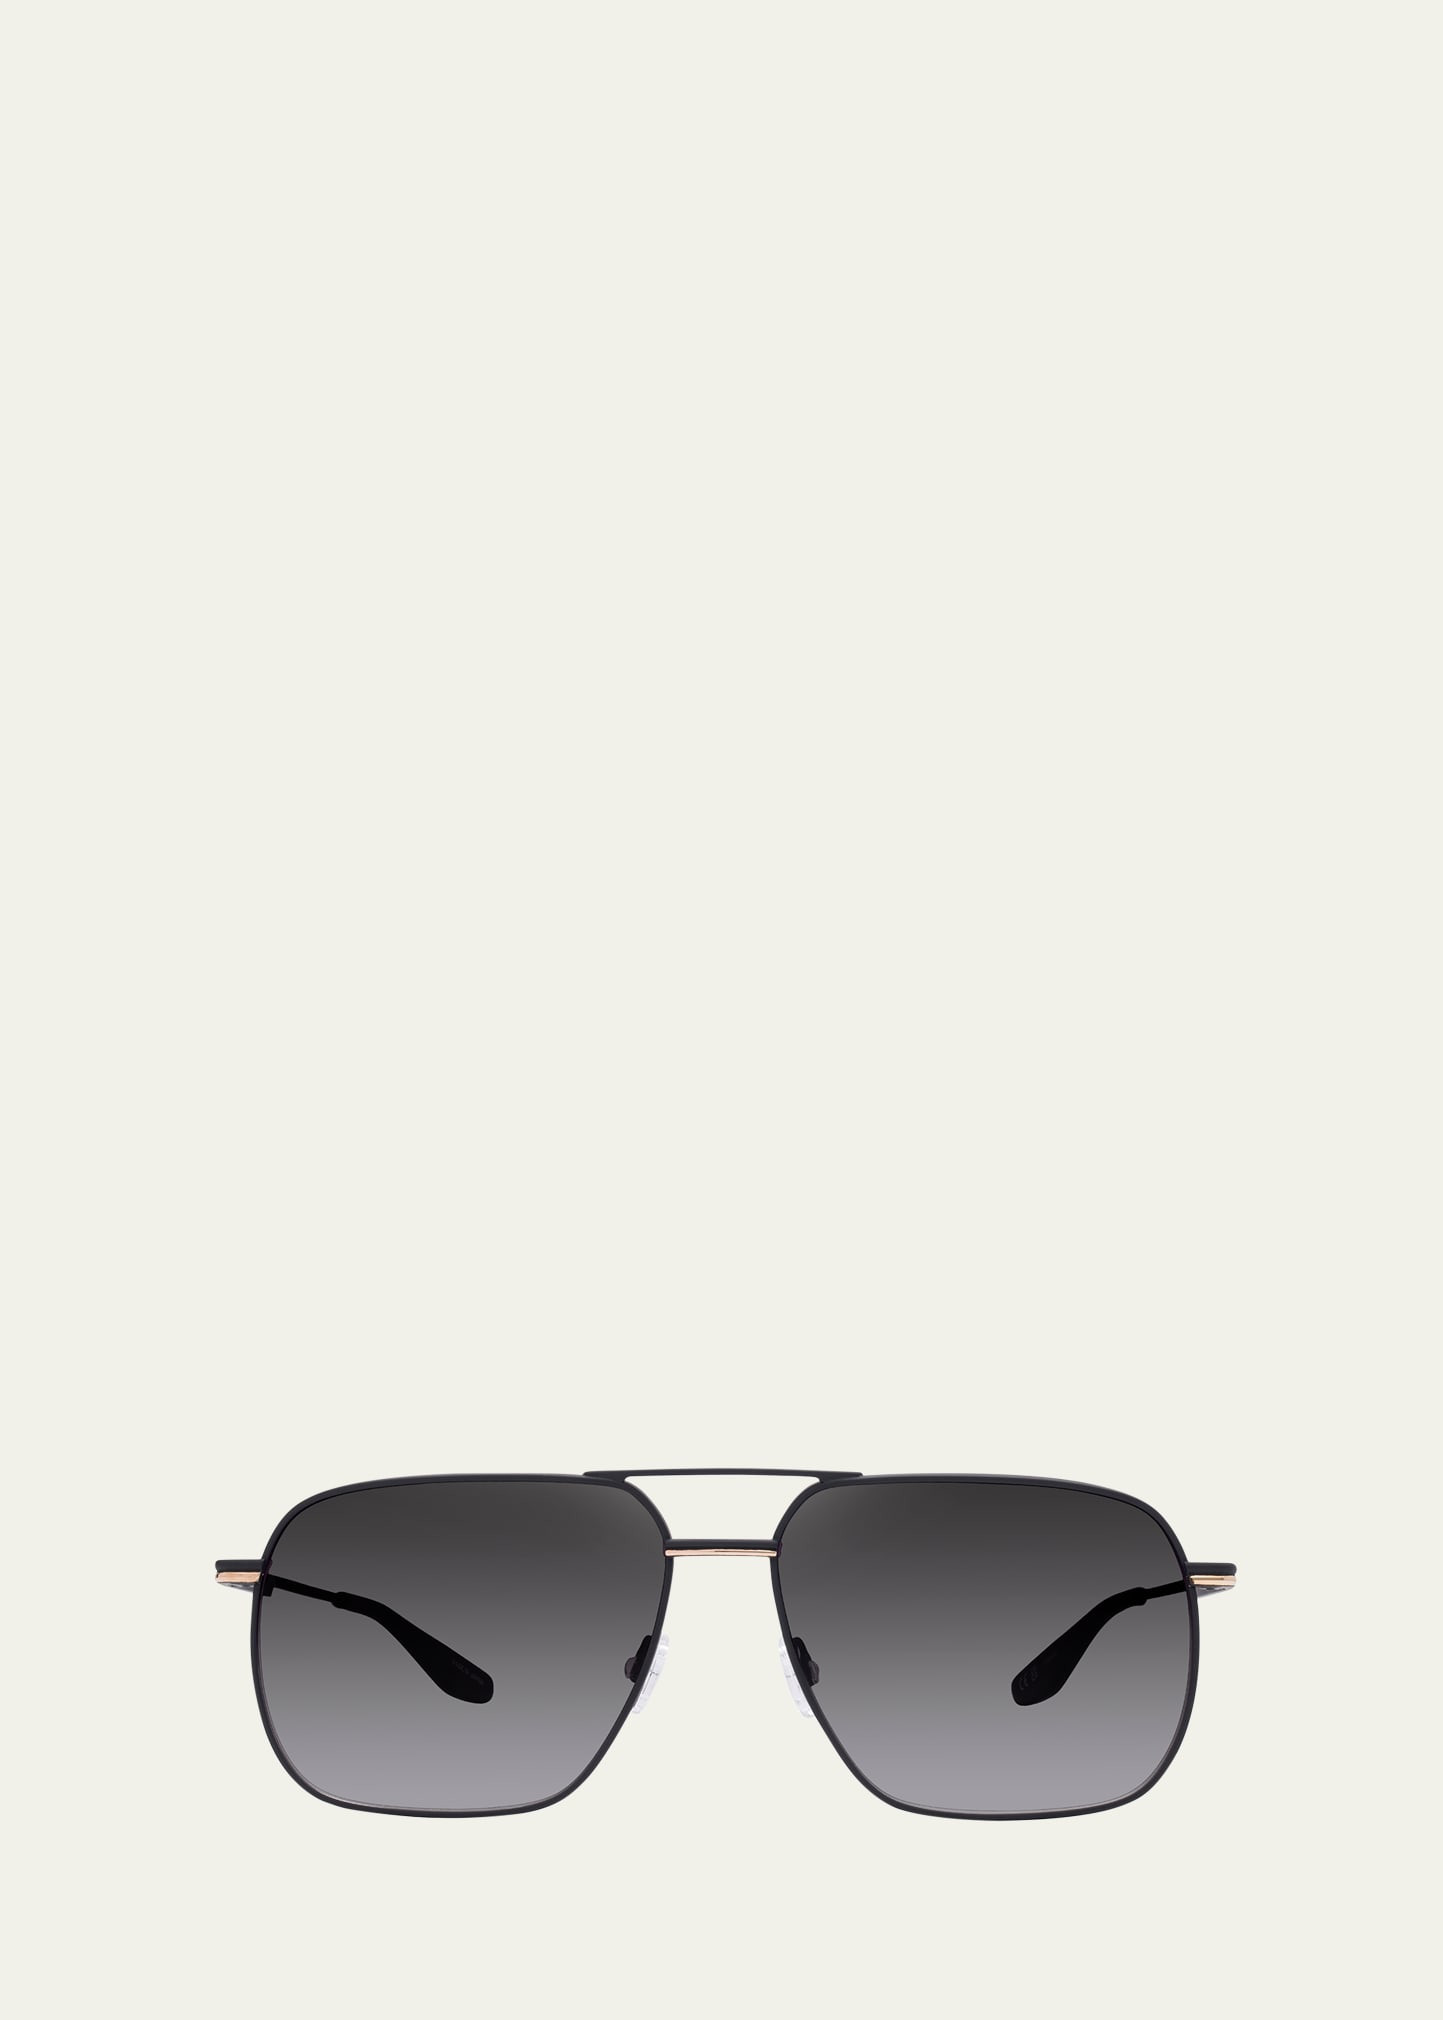 Barton Perreira Men's Royale Titanium Aviator Sunglasses In Black Satin/gold/